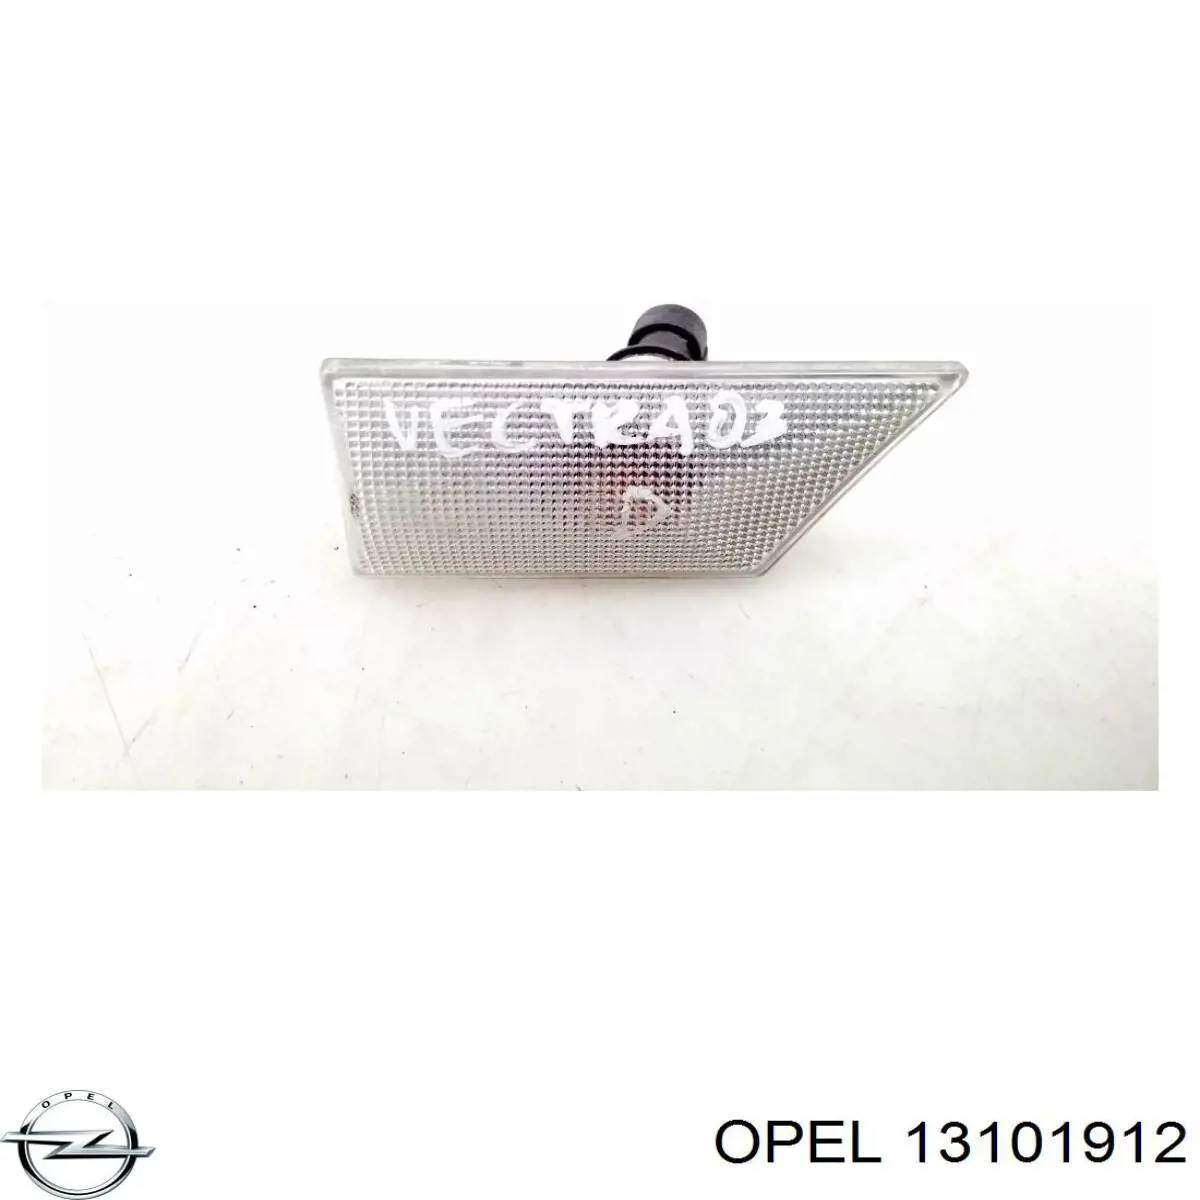 Указатель поворота правый Opel 13101912